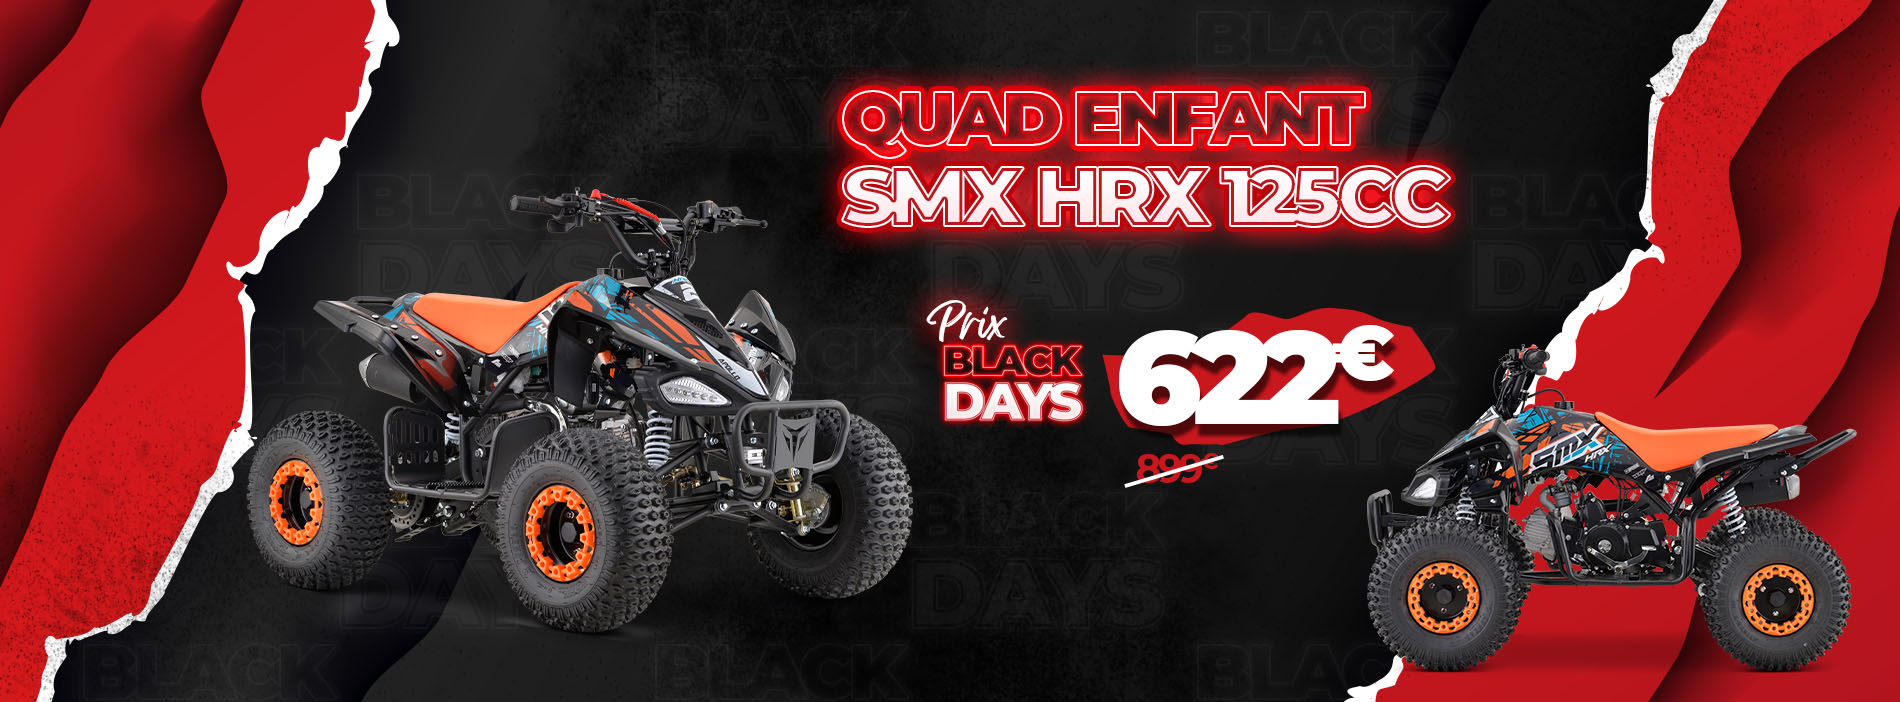 Black Days Quad HRX